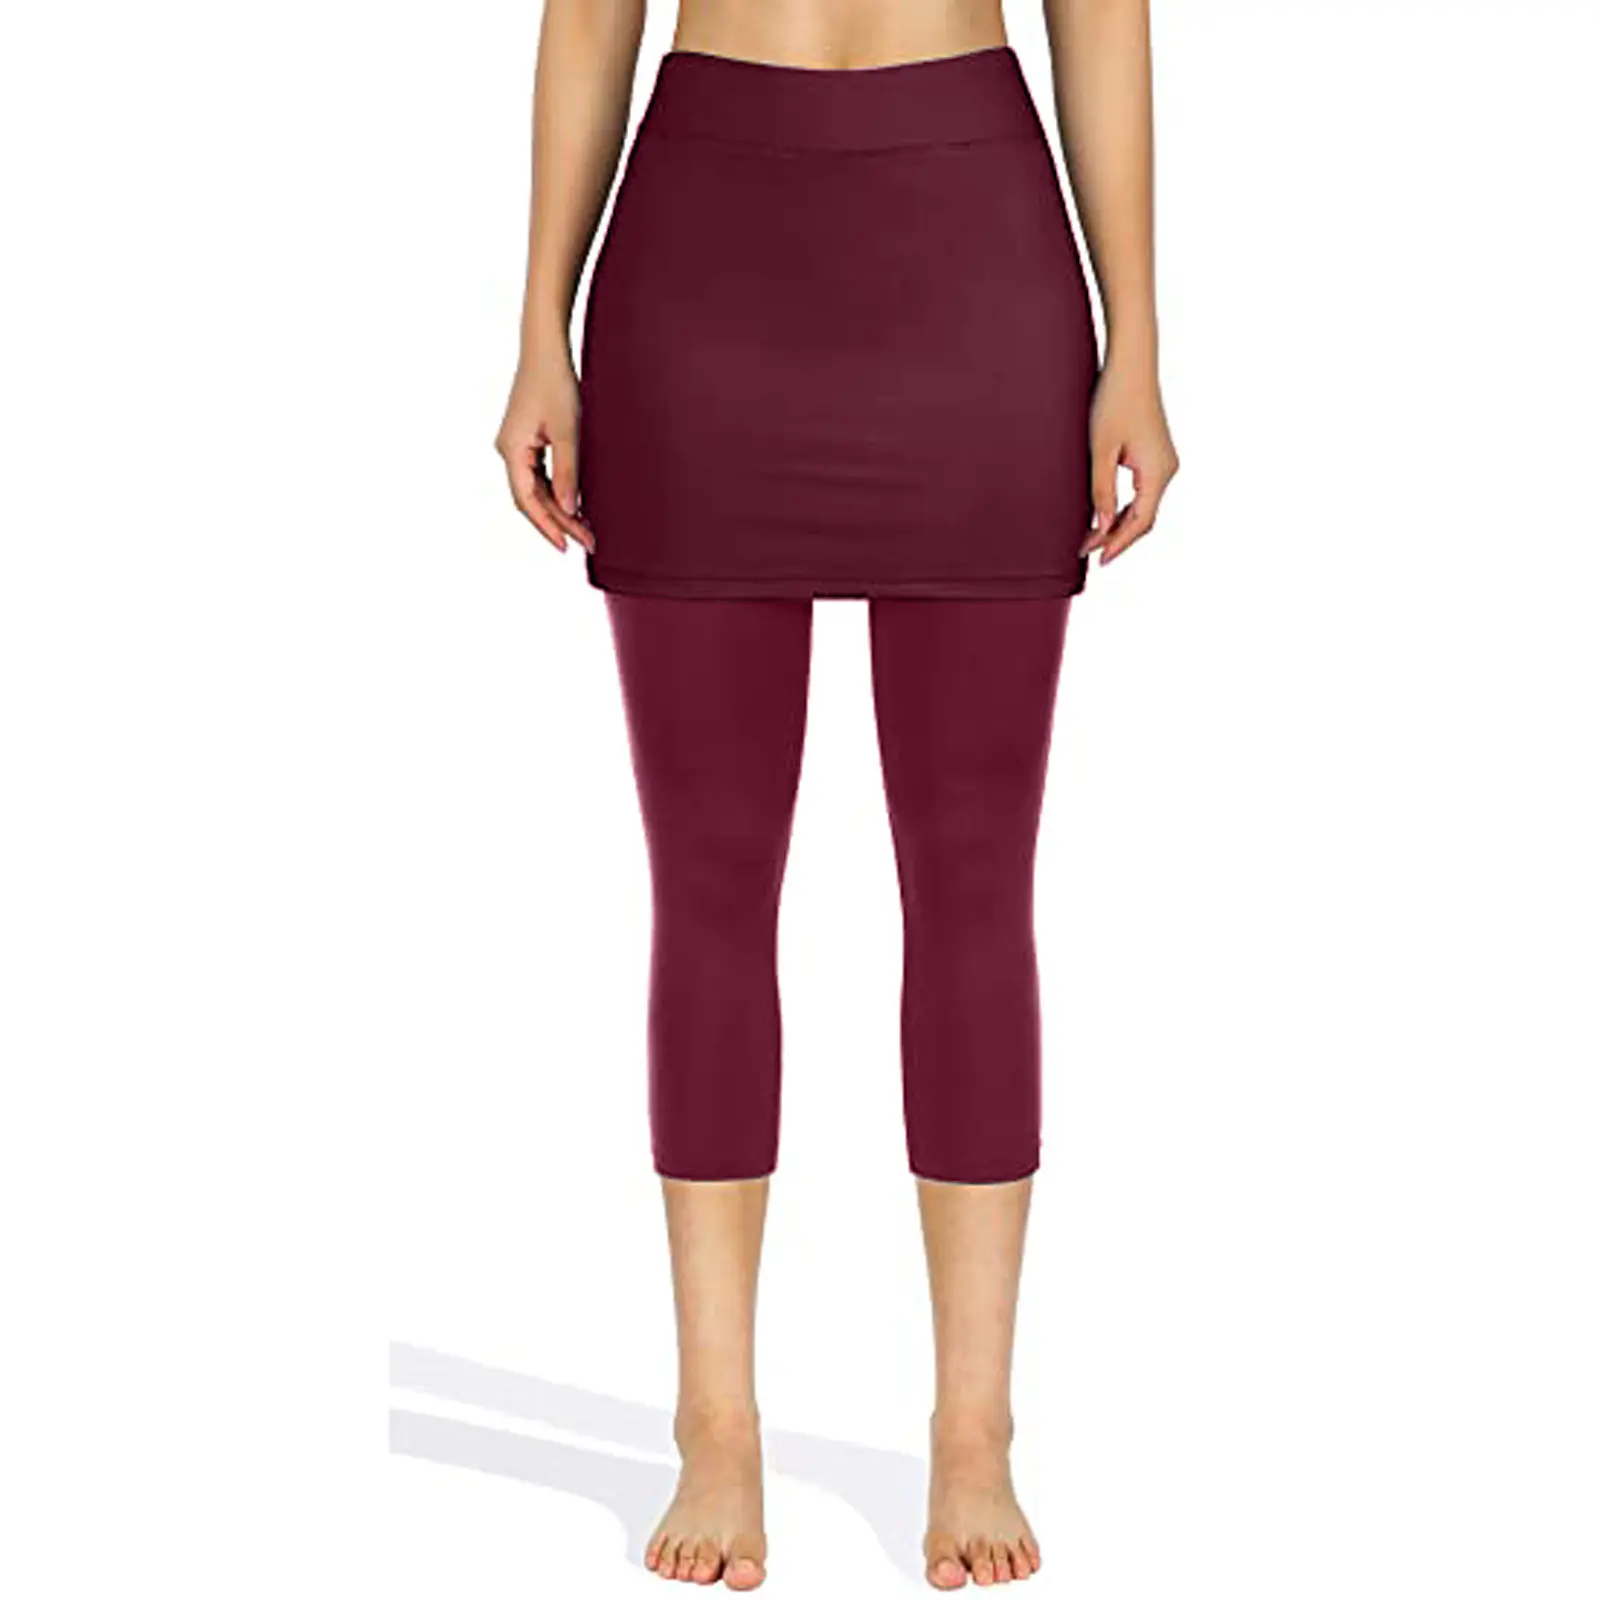 Factory direct sales plus size women's pants trousers casual yoga pants fashion women's pants